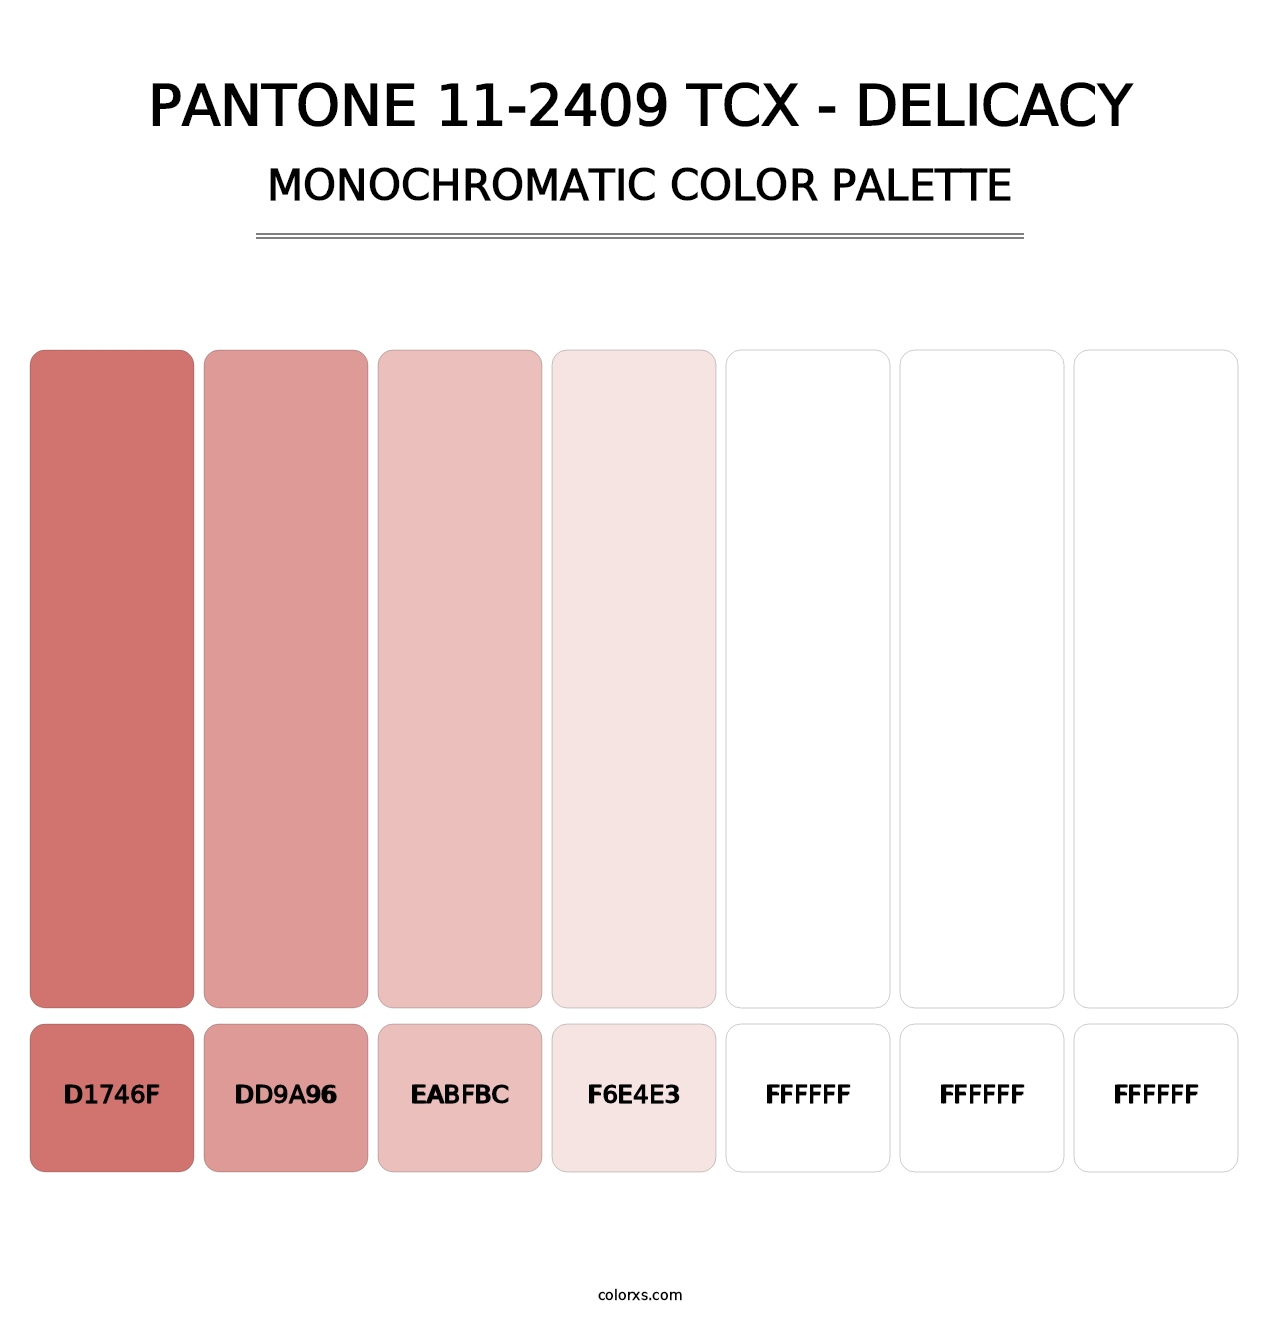 PANTONE 11-2409 TCX - Delicacy - Monochromatic Color Palette